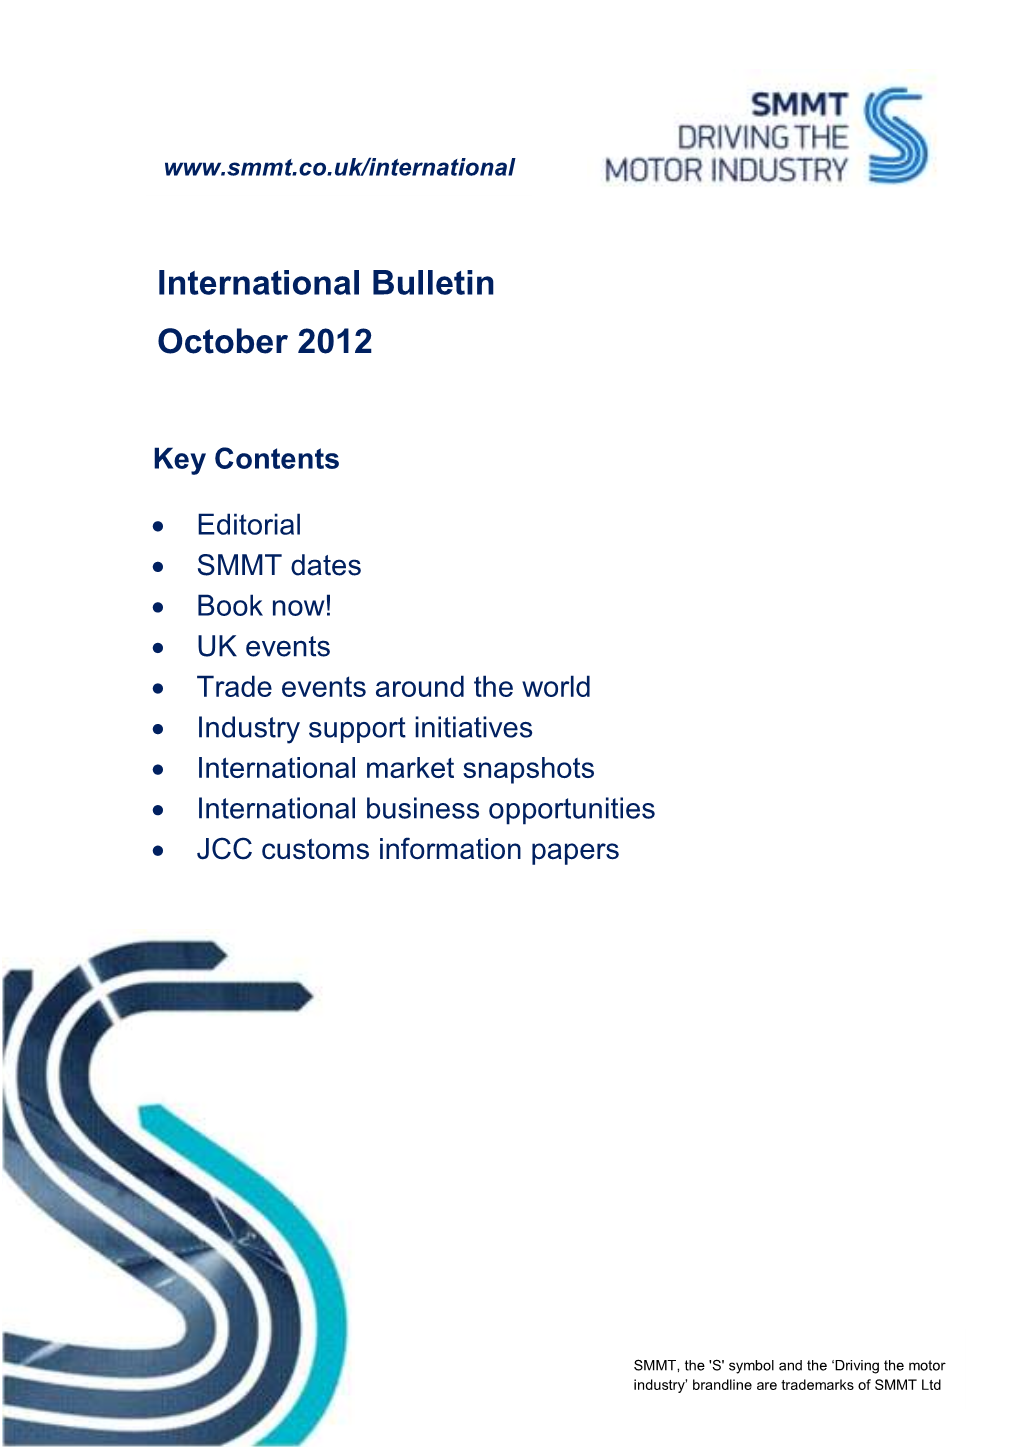 International Bulletin October 2012